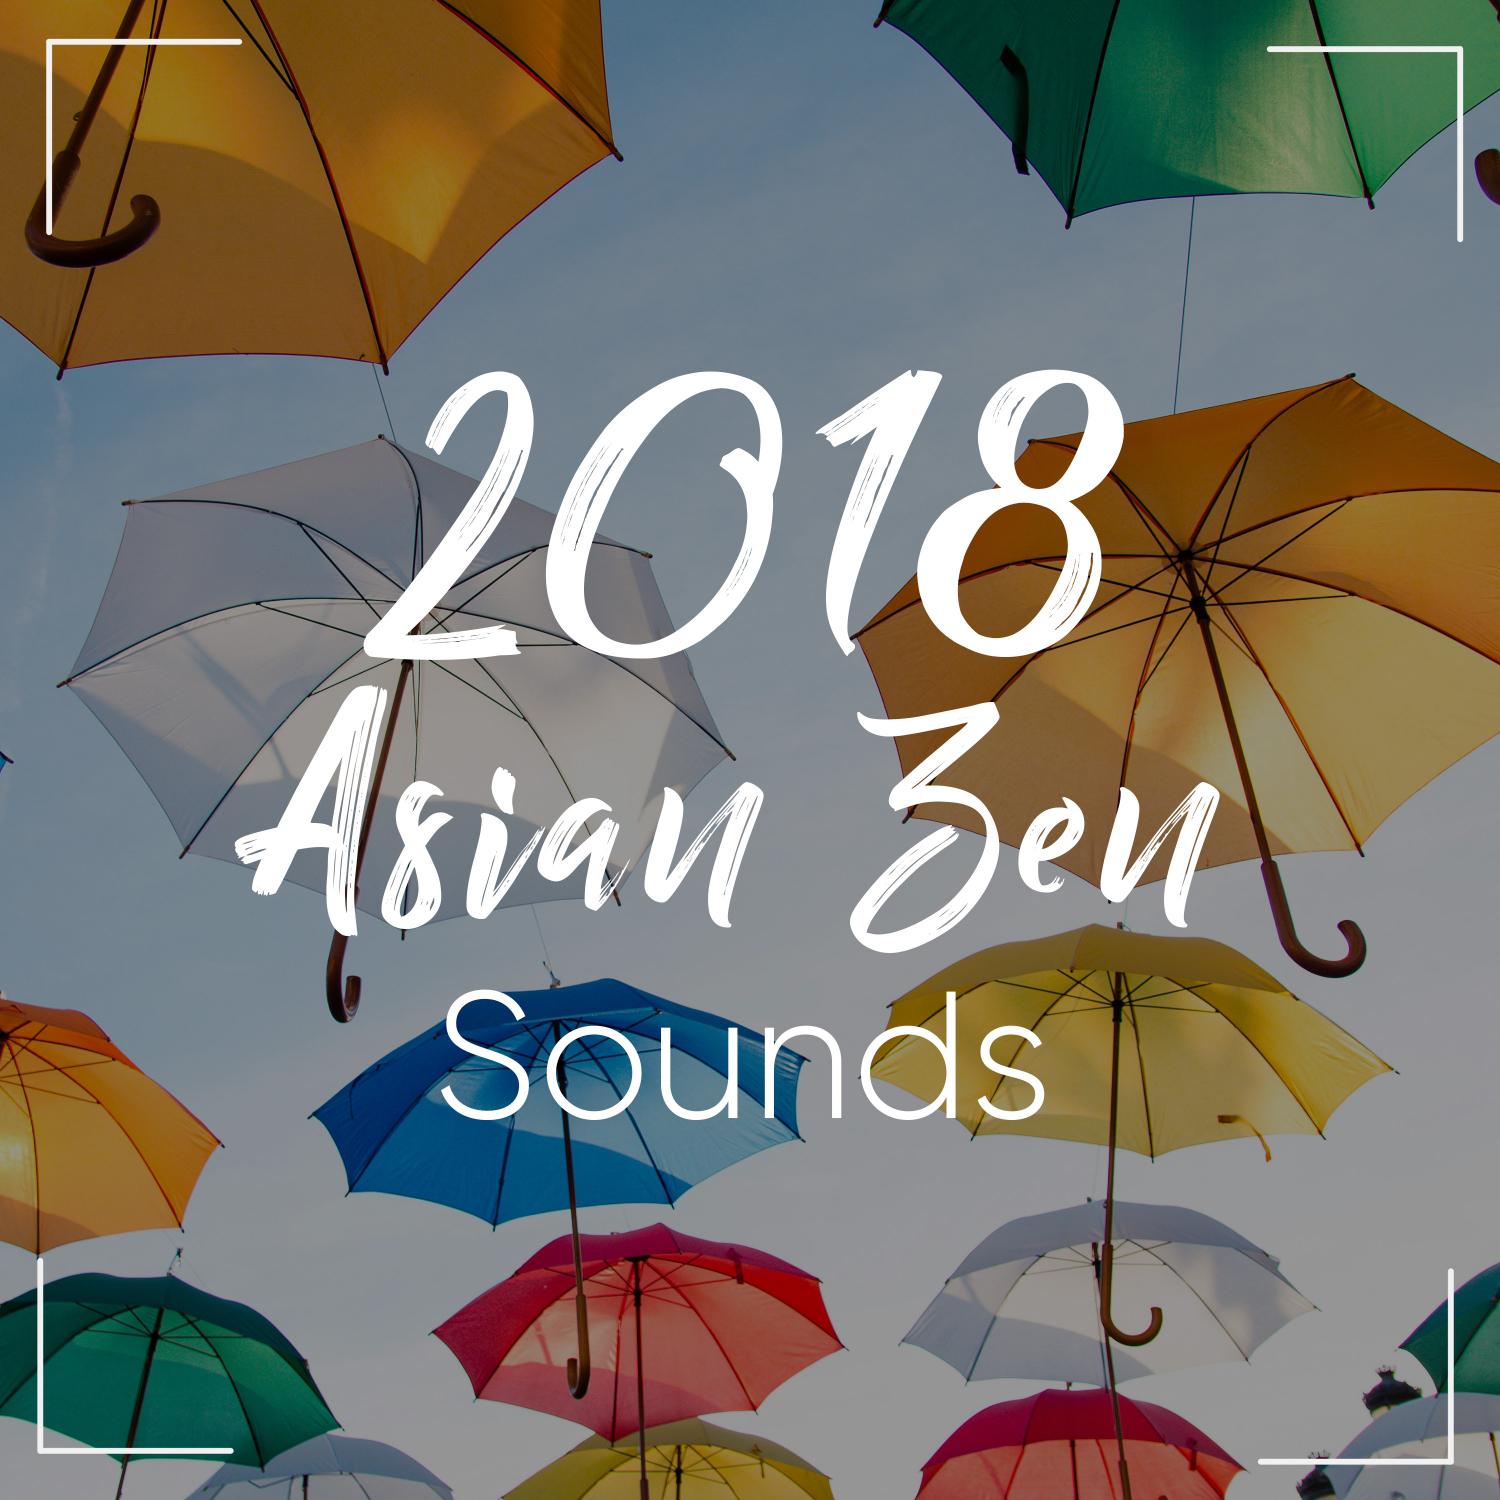 2018 Asian Zen Noises for Guided Meditation